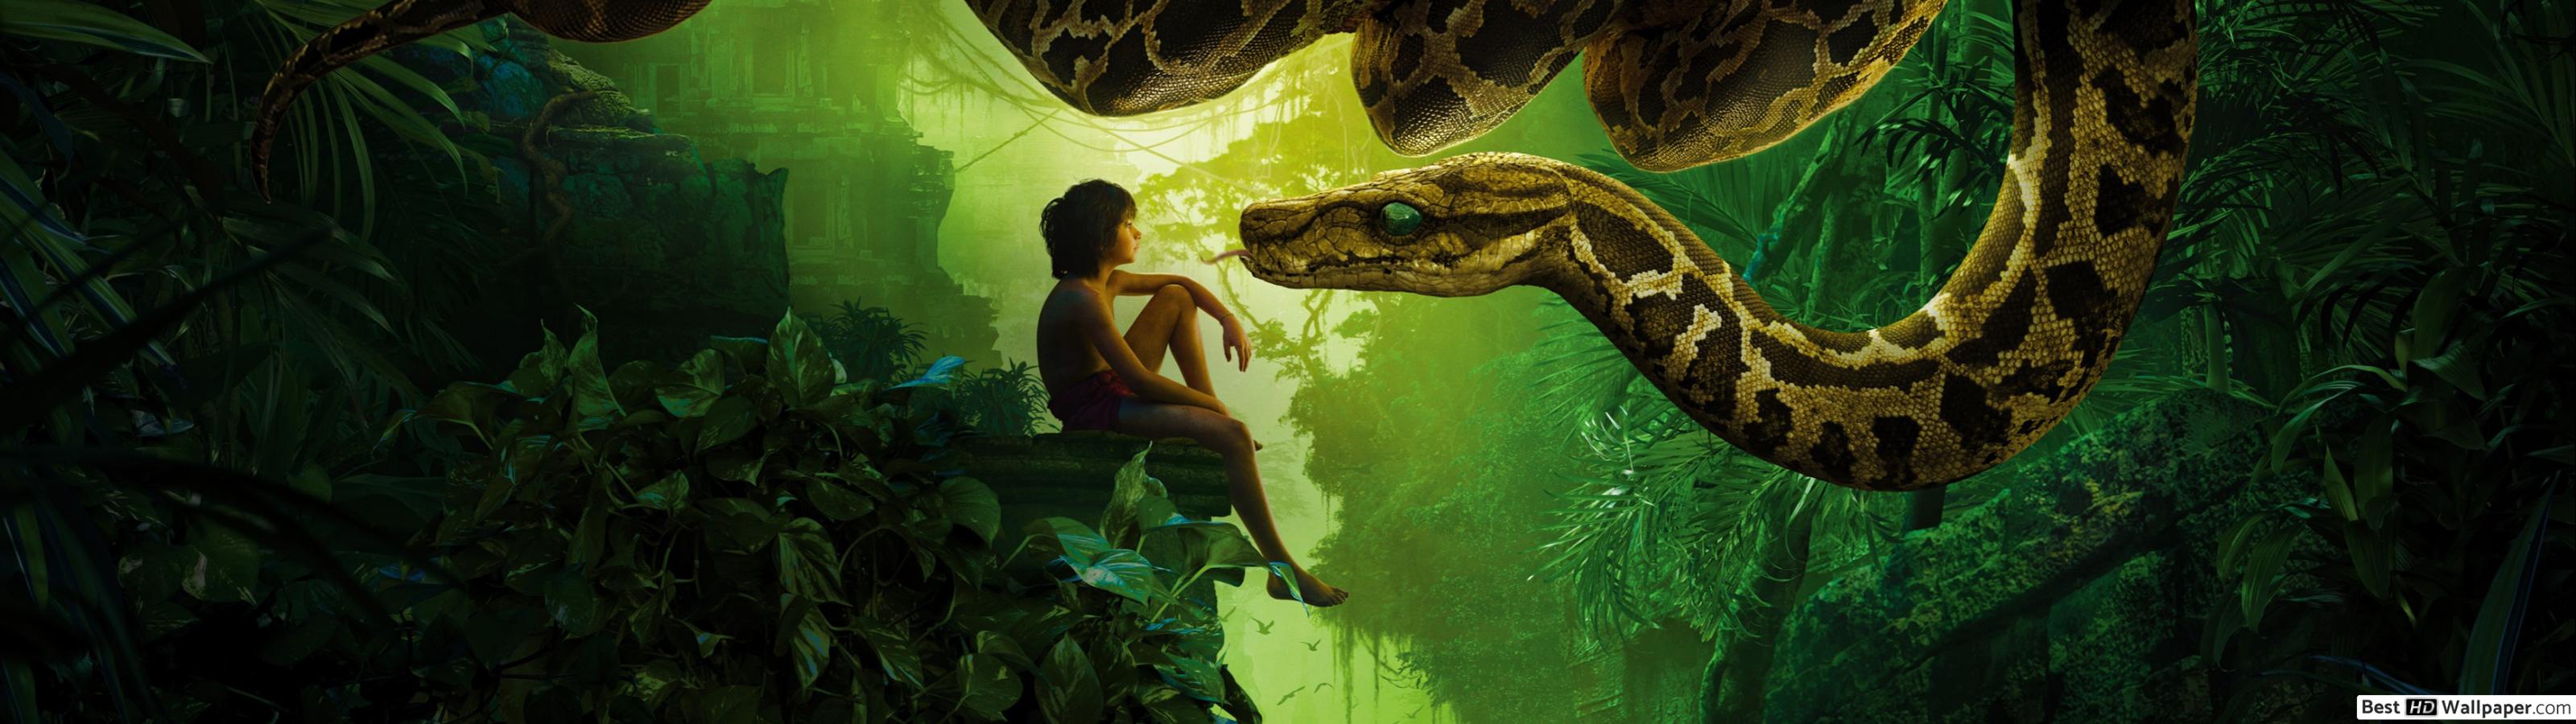 The Jungle Book movie with Mowgli HD wallpaper download